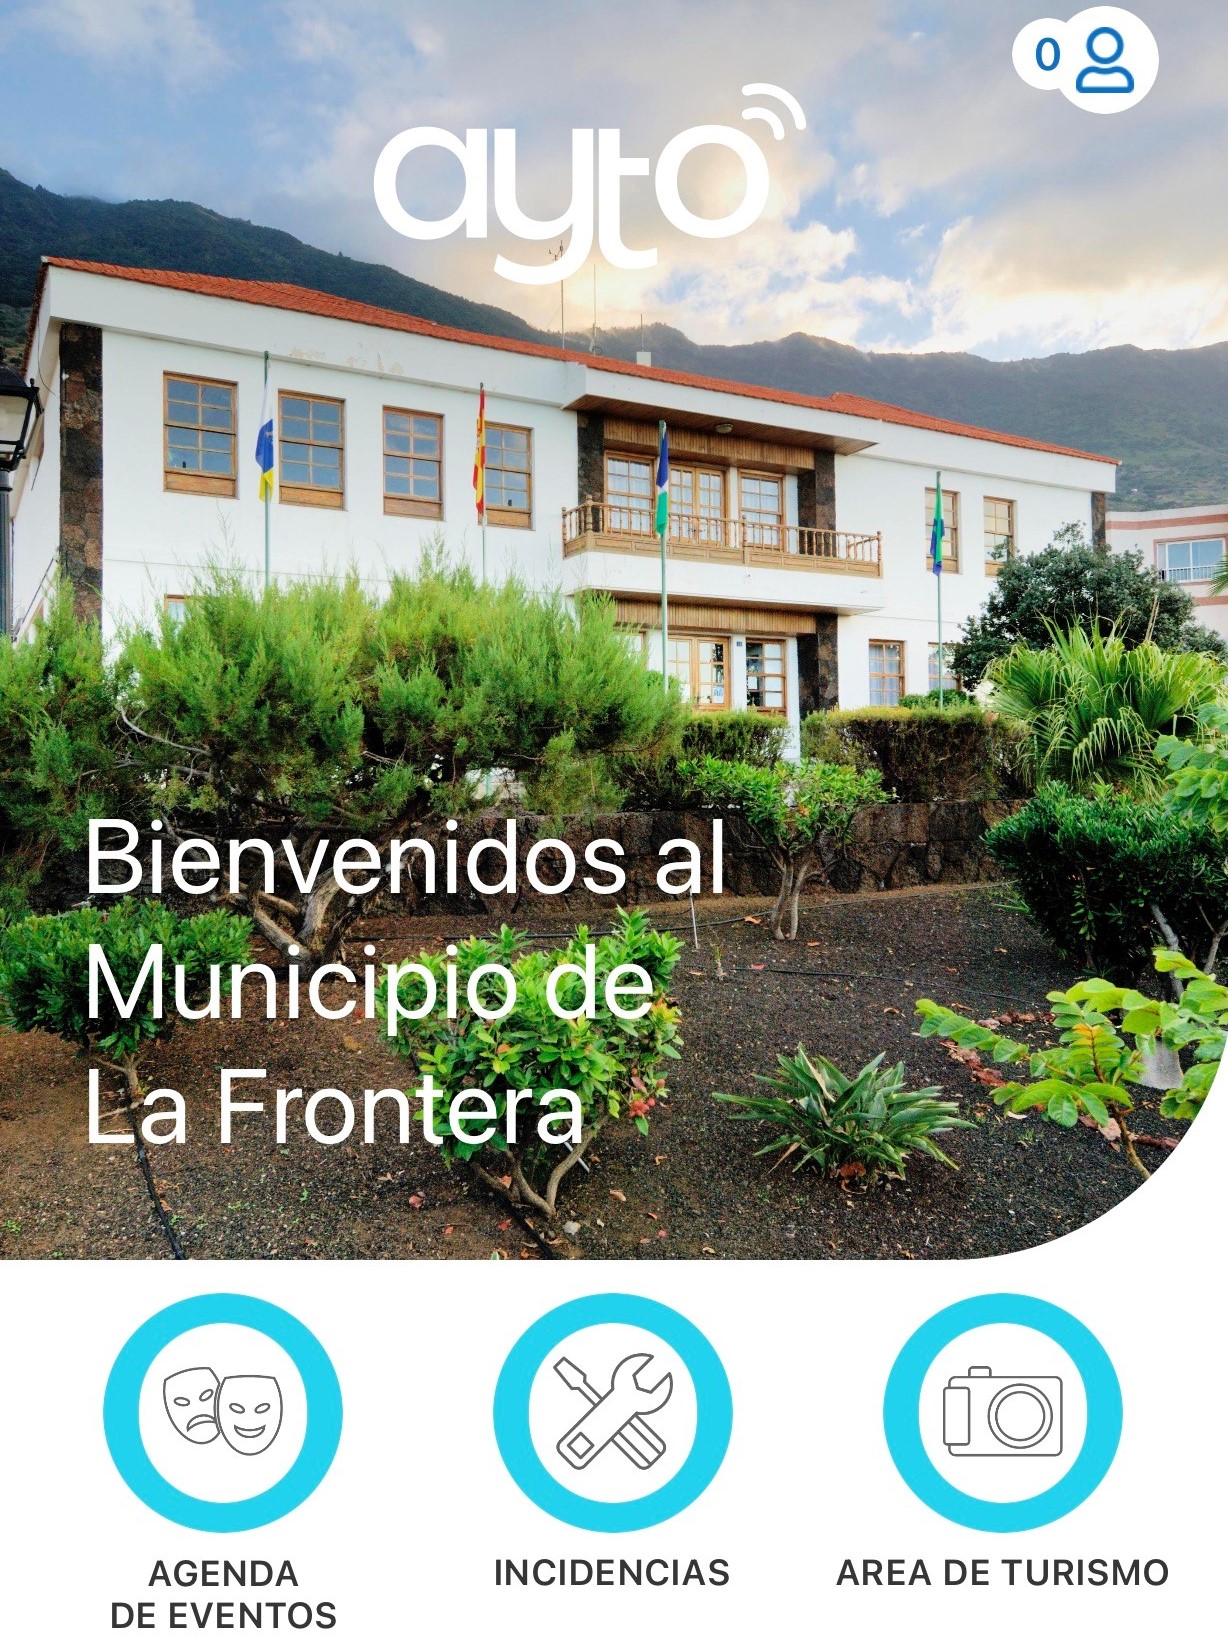 Una app del ayuntamiento de La Frontera ofrecerá información puntual sobre el municipio y sus servicios